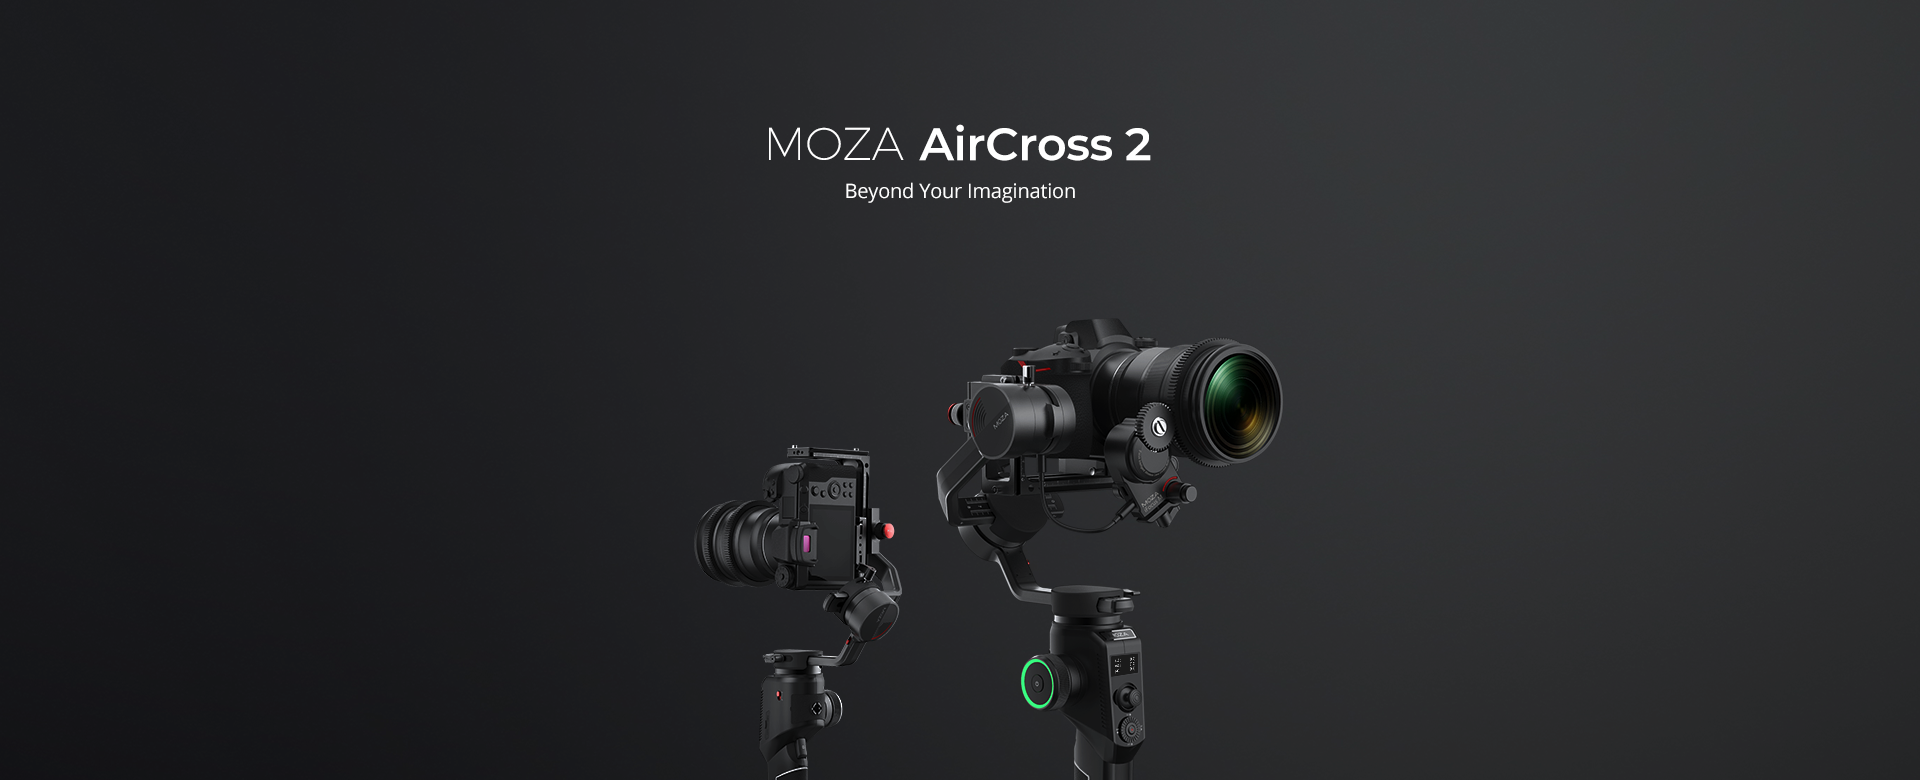 MOZA AirCross 2 Jenseits Ihrer Vorstellungskraft